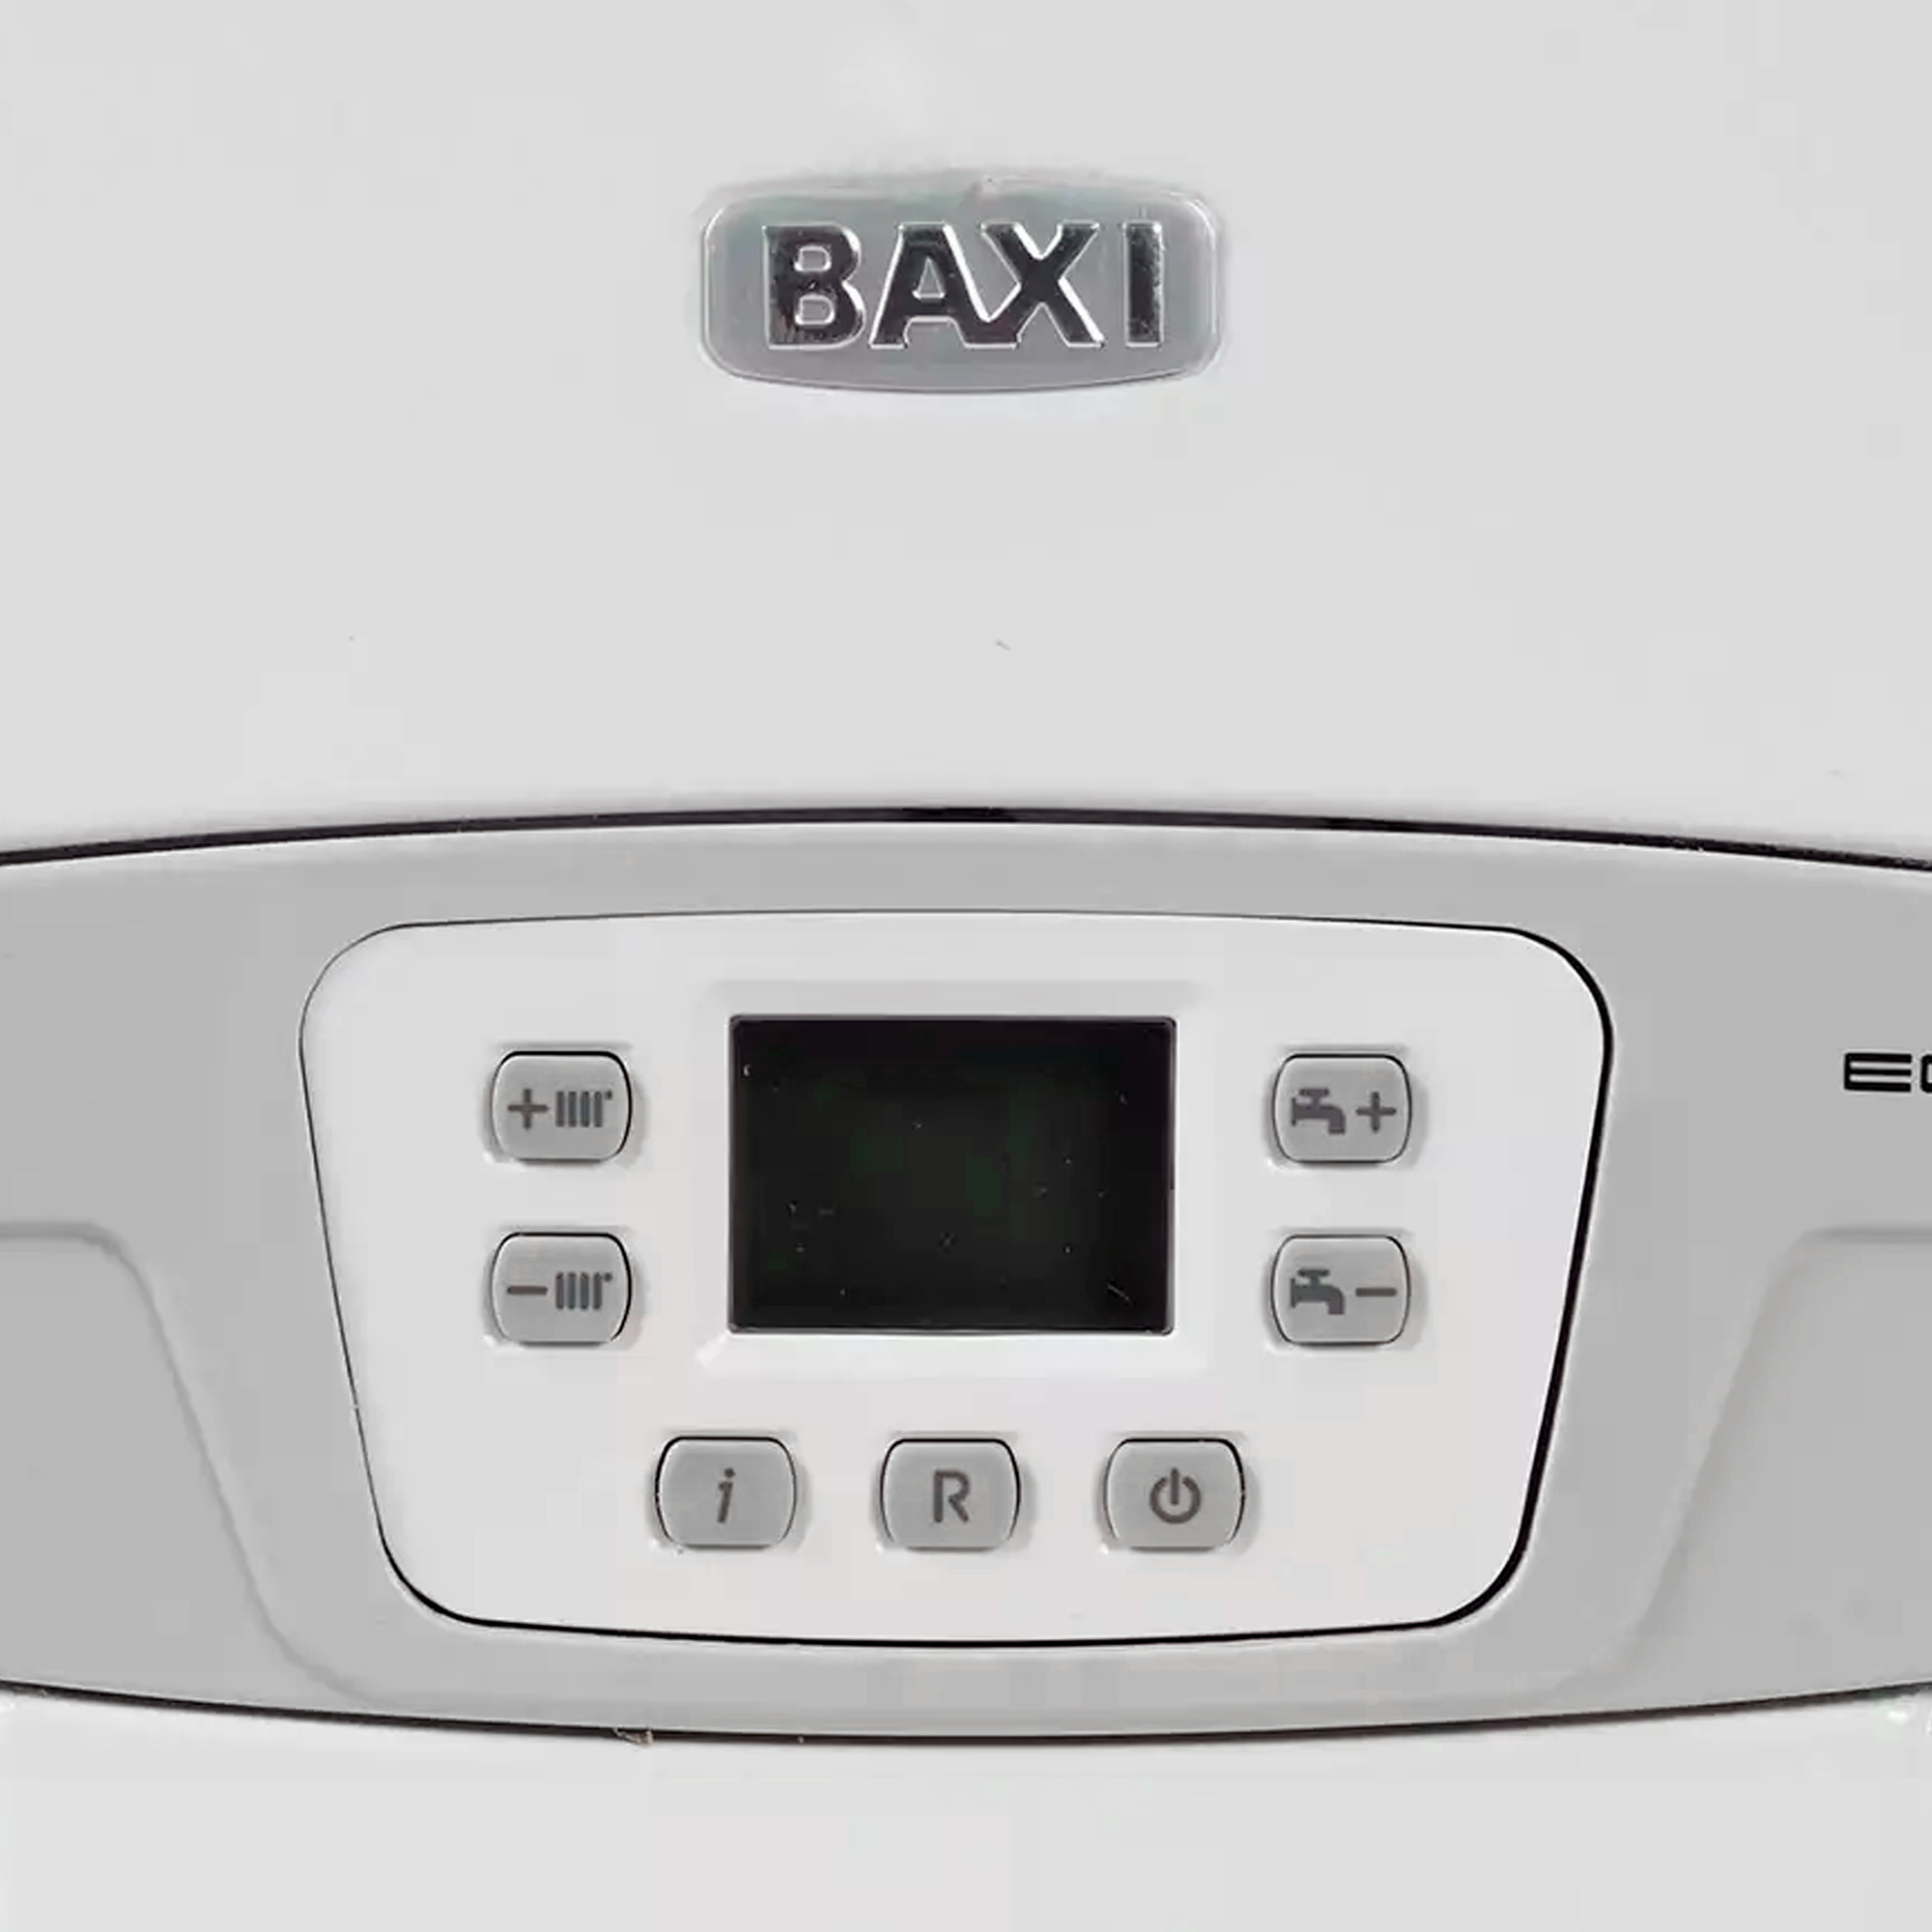 Купить двухконтурный котел baxi. Baxi котел Eco four 24 f. Baxi Eco-4s 18f. Котел бакси Eco four 1.24. Газовый котел Baxi Eco-4s 24.